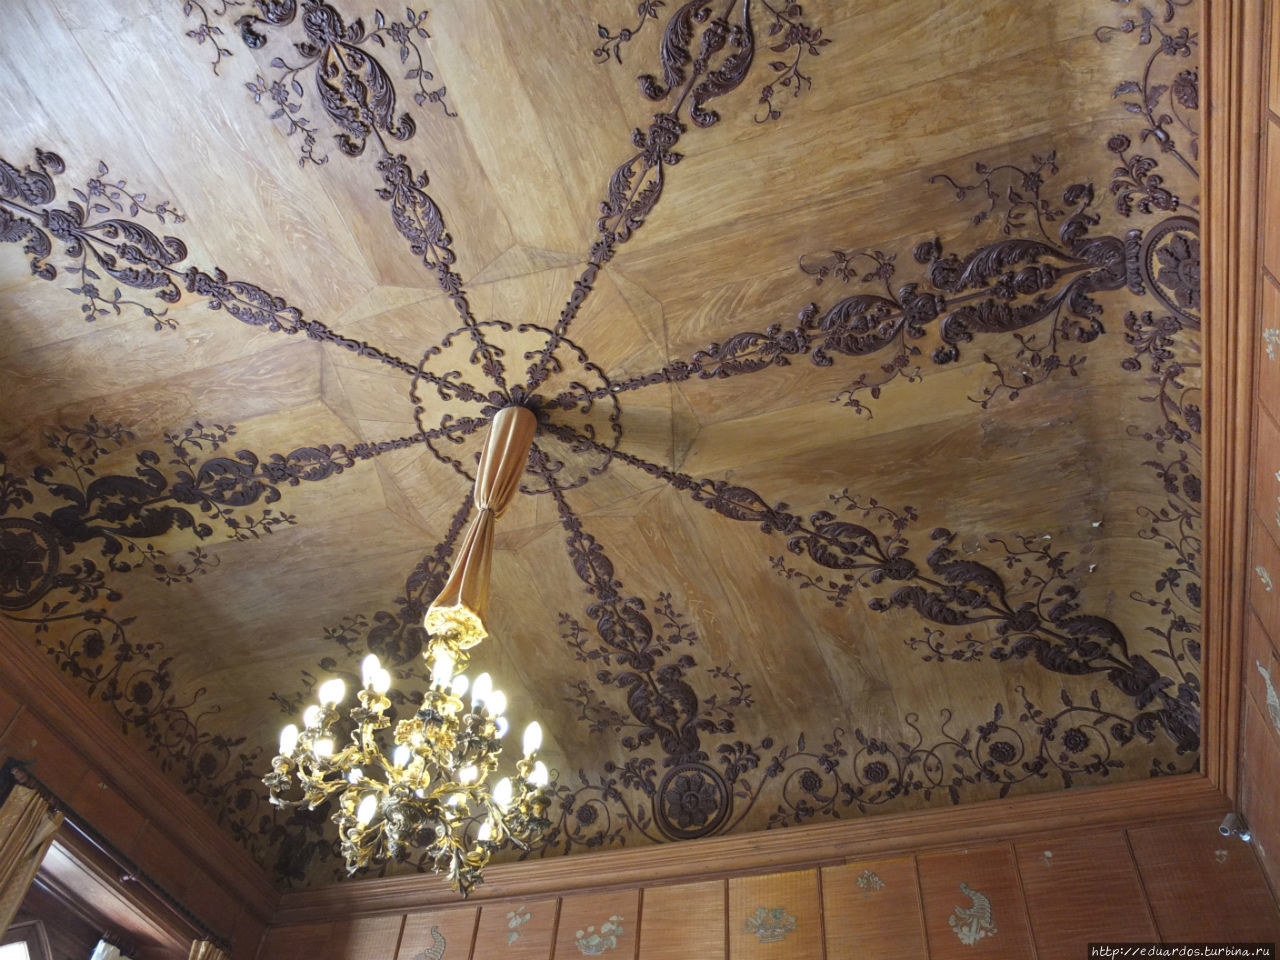 Посмотрите внимательно на потолок. Это не шпон!!!  Это роспись маслом по гипсу!!! Алупка, Россия